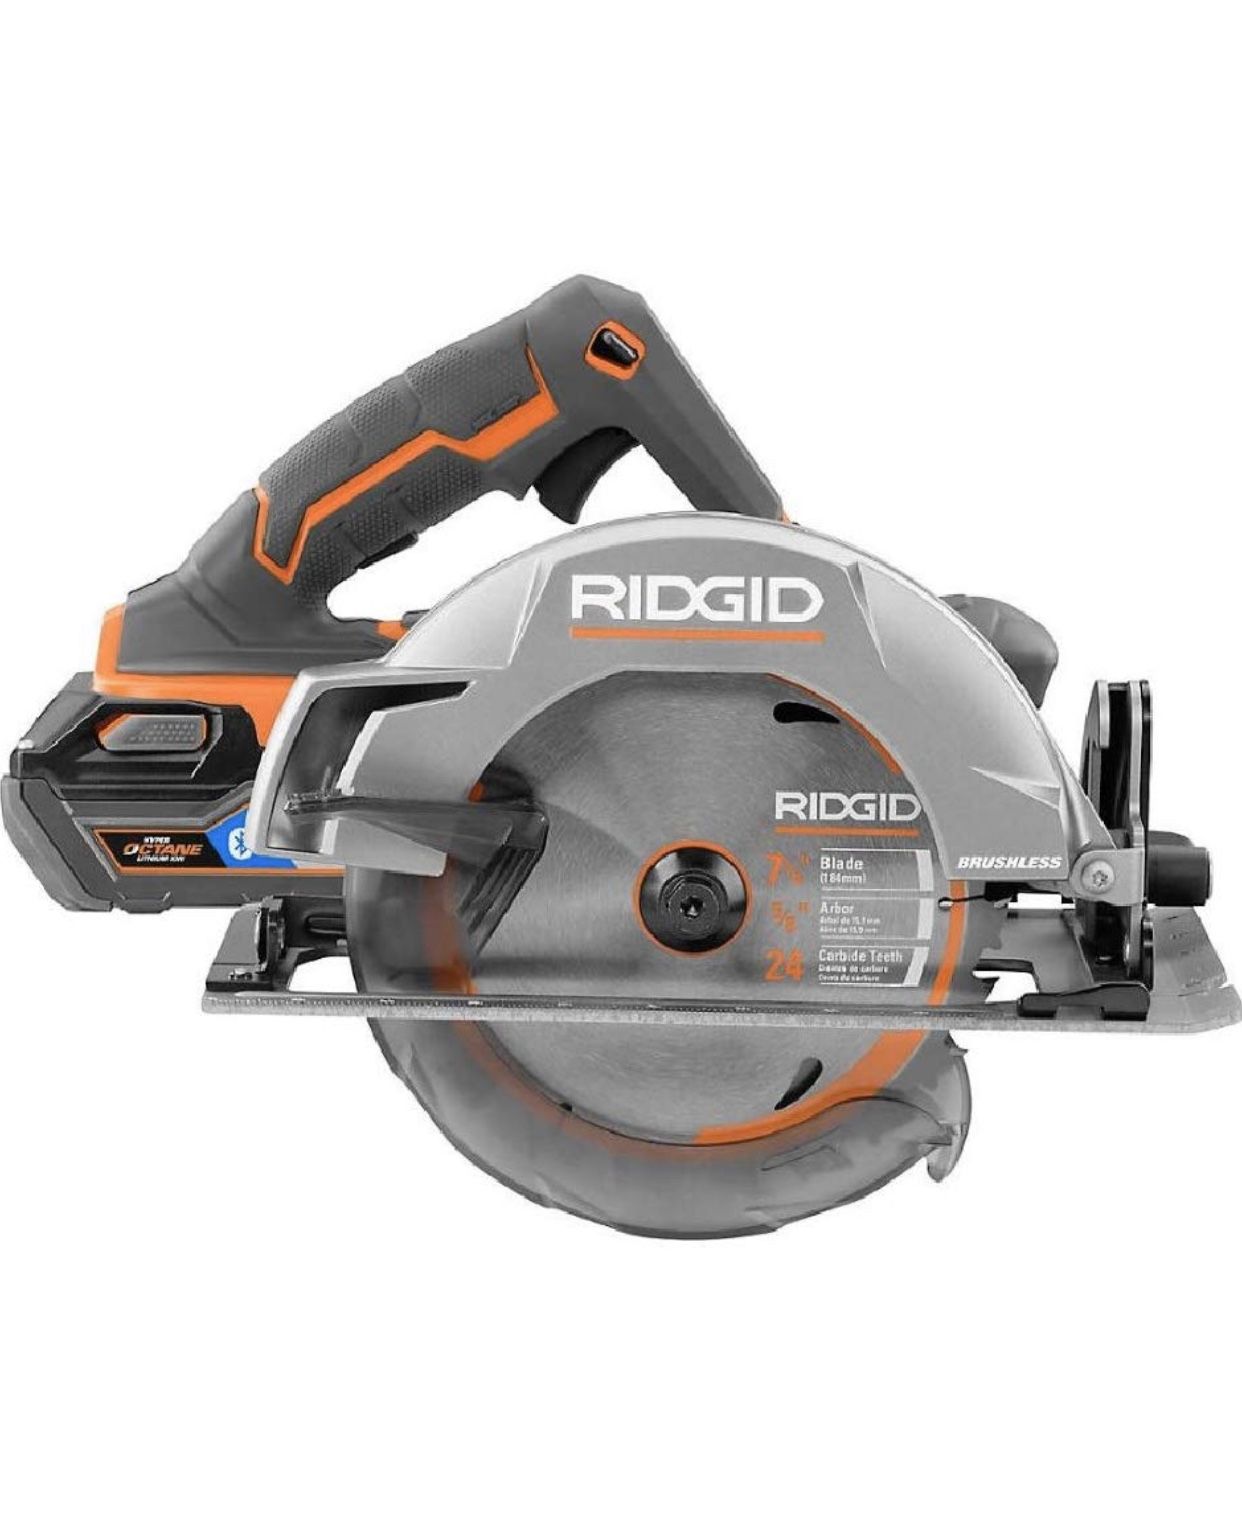 ridgid gen 5x 18v circular saw